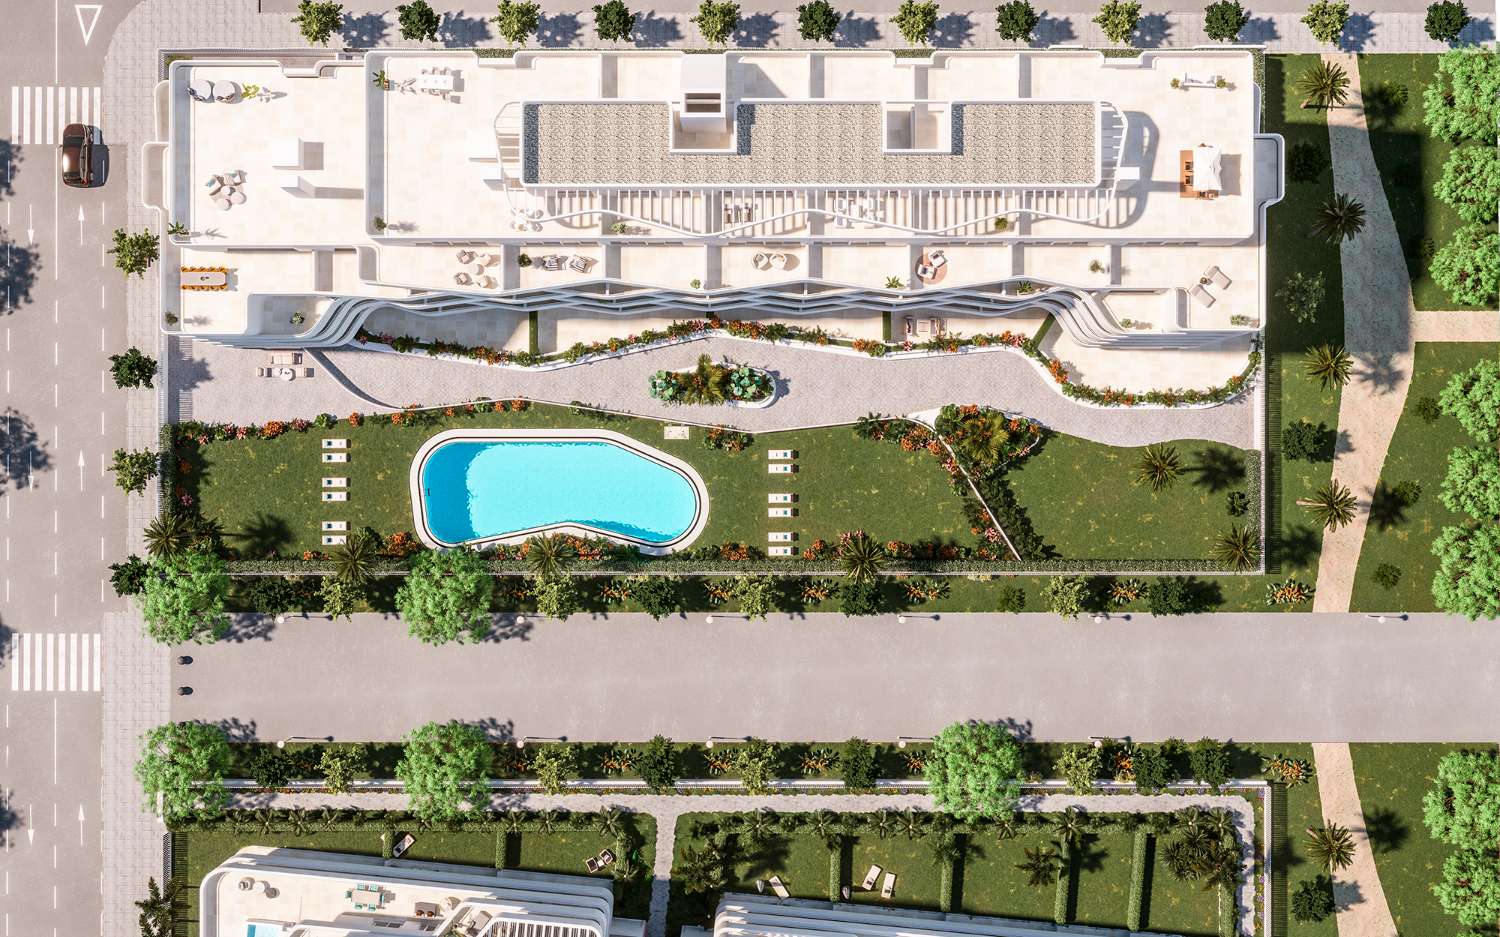 Uusia asuntoja Torre del Mar myytävänä, 2 makuuhuonetta, 2 kylpyhuonetta, terassi merinäköalalla ja uima-allas – 285 000 €